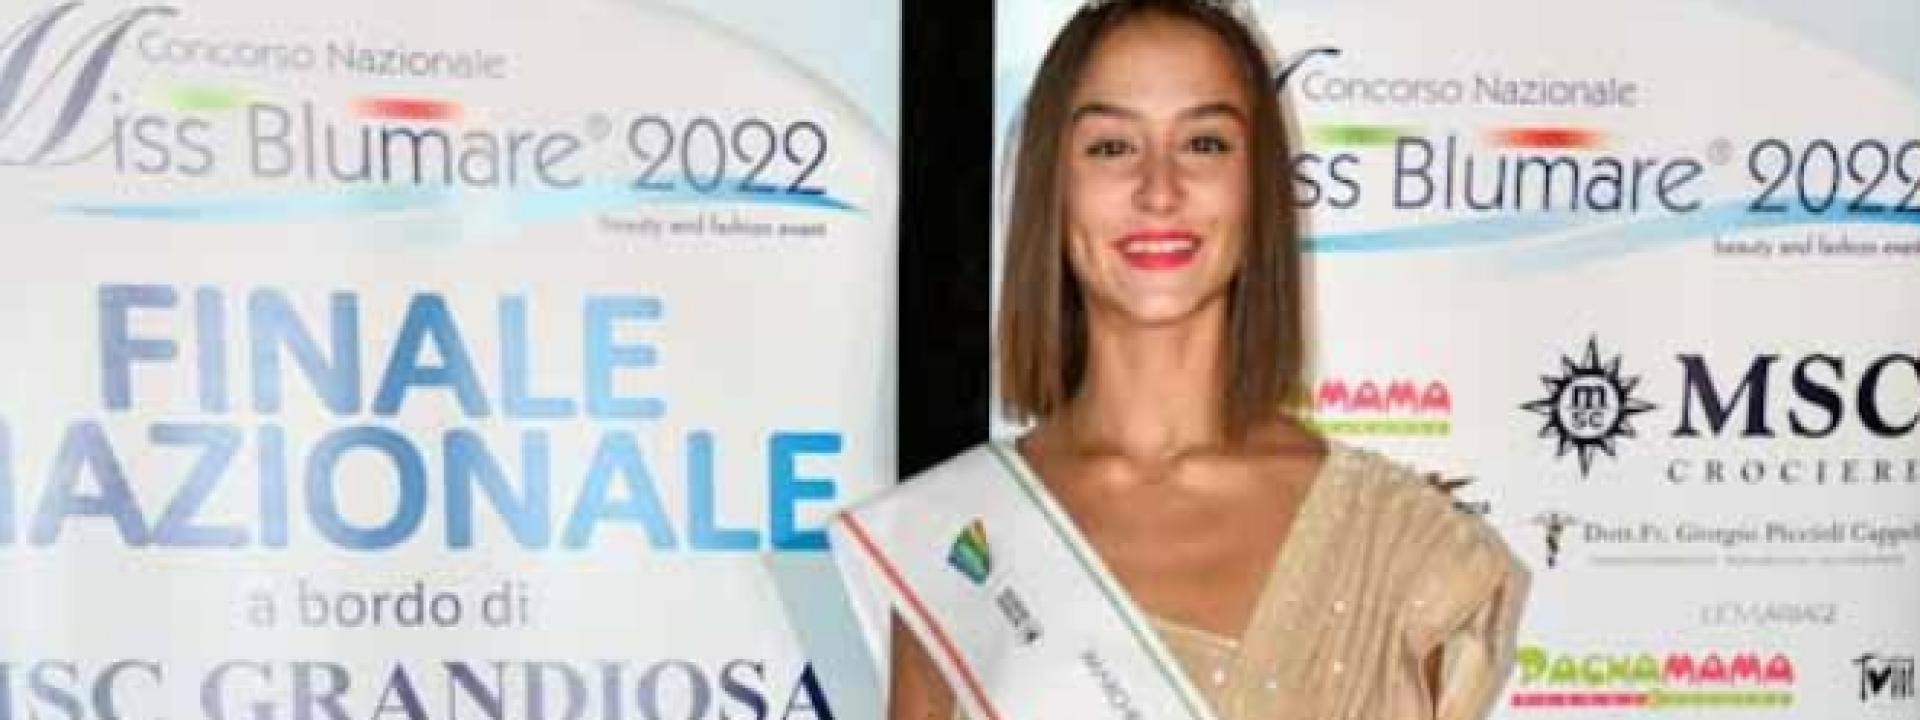 Marche - Alle Terme di Sarnano Alessia Settimi incoronata Miss Blumare Marche 2022 (FOTO)